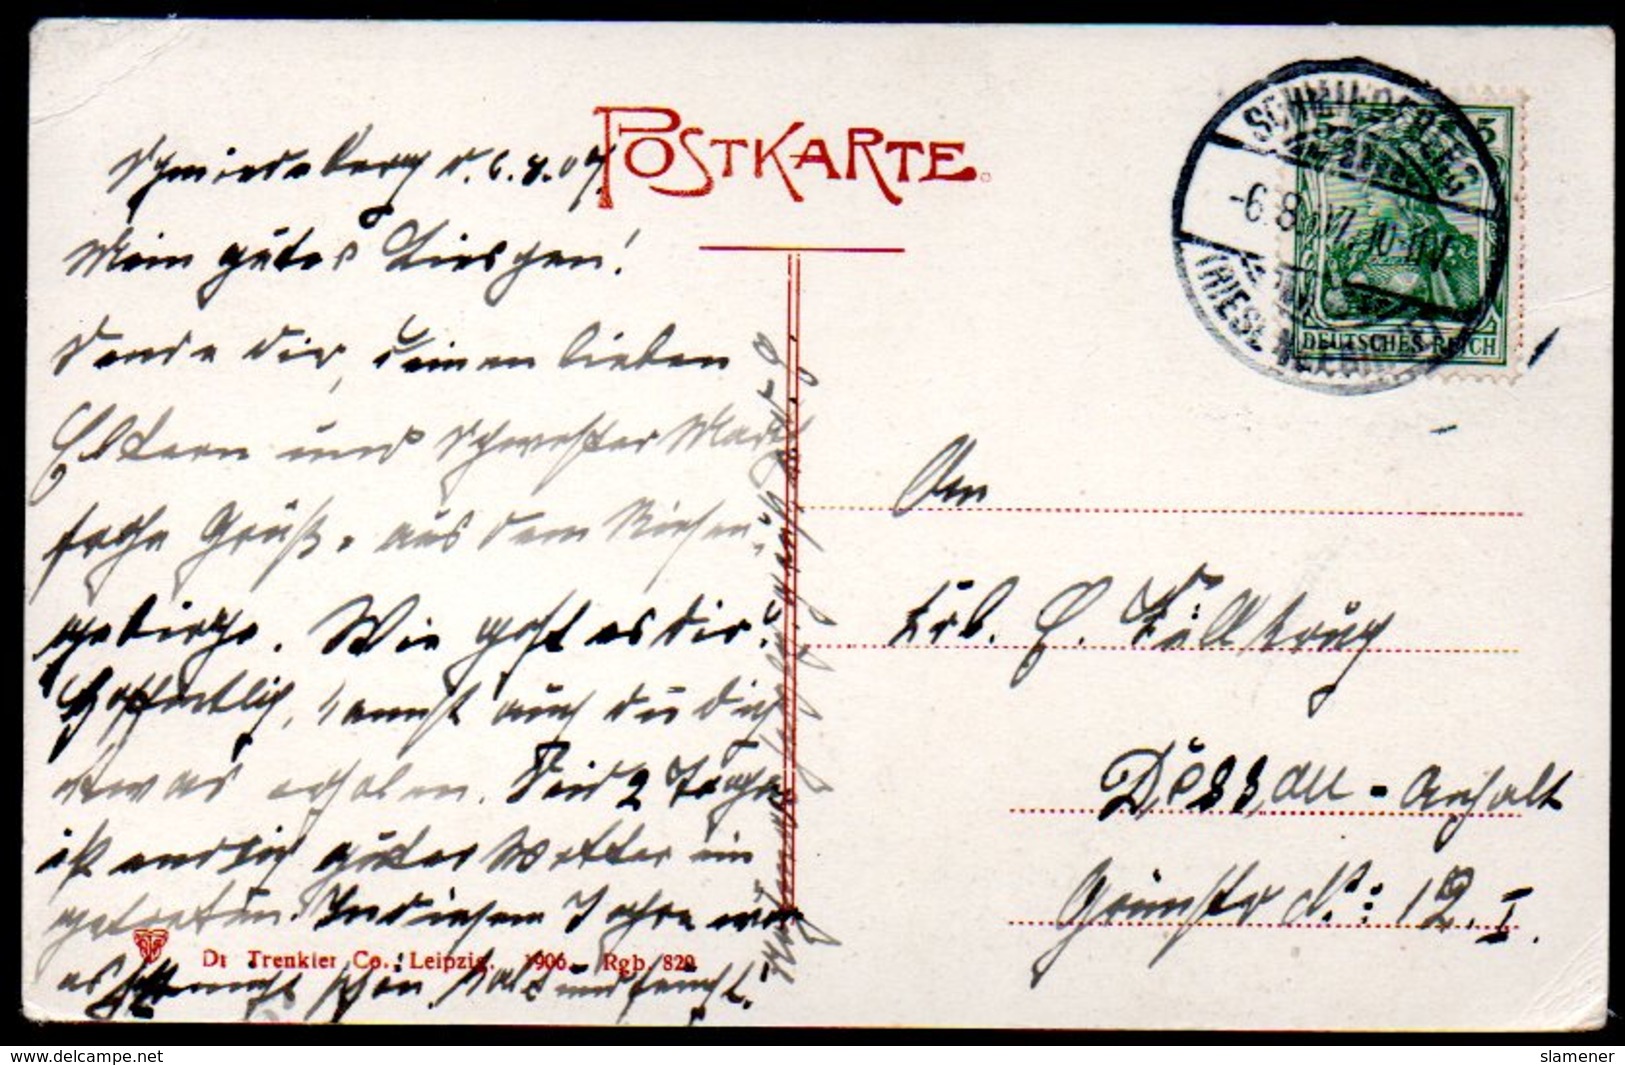 Alte Postkarte,PETZER MIT KAPELLE,RIESENGEBIRGE,Pec Pod Snezku,gelaufen 1904 - Böhmen Und Mähren